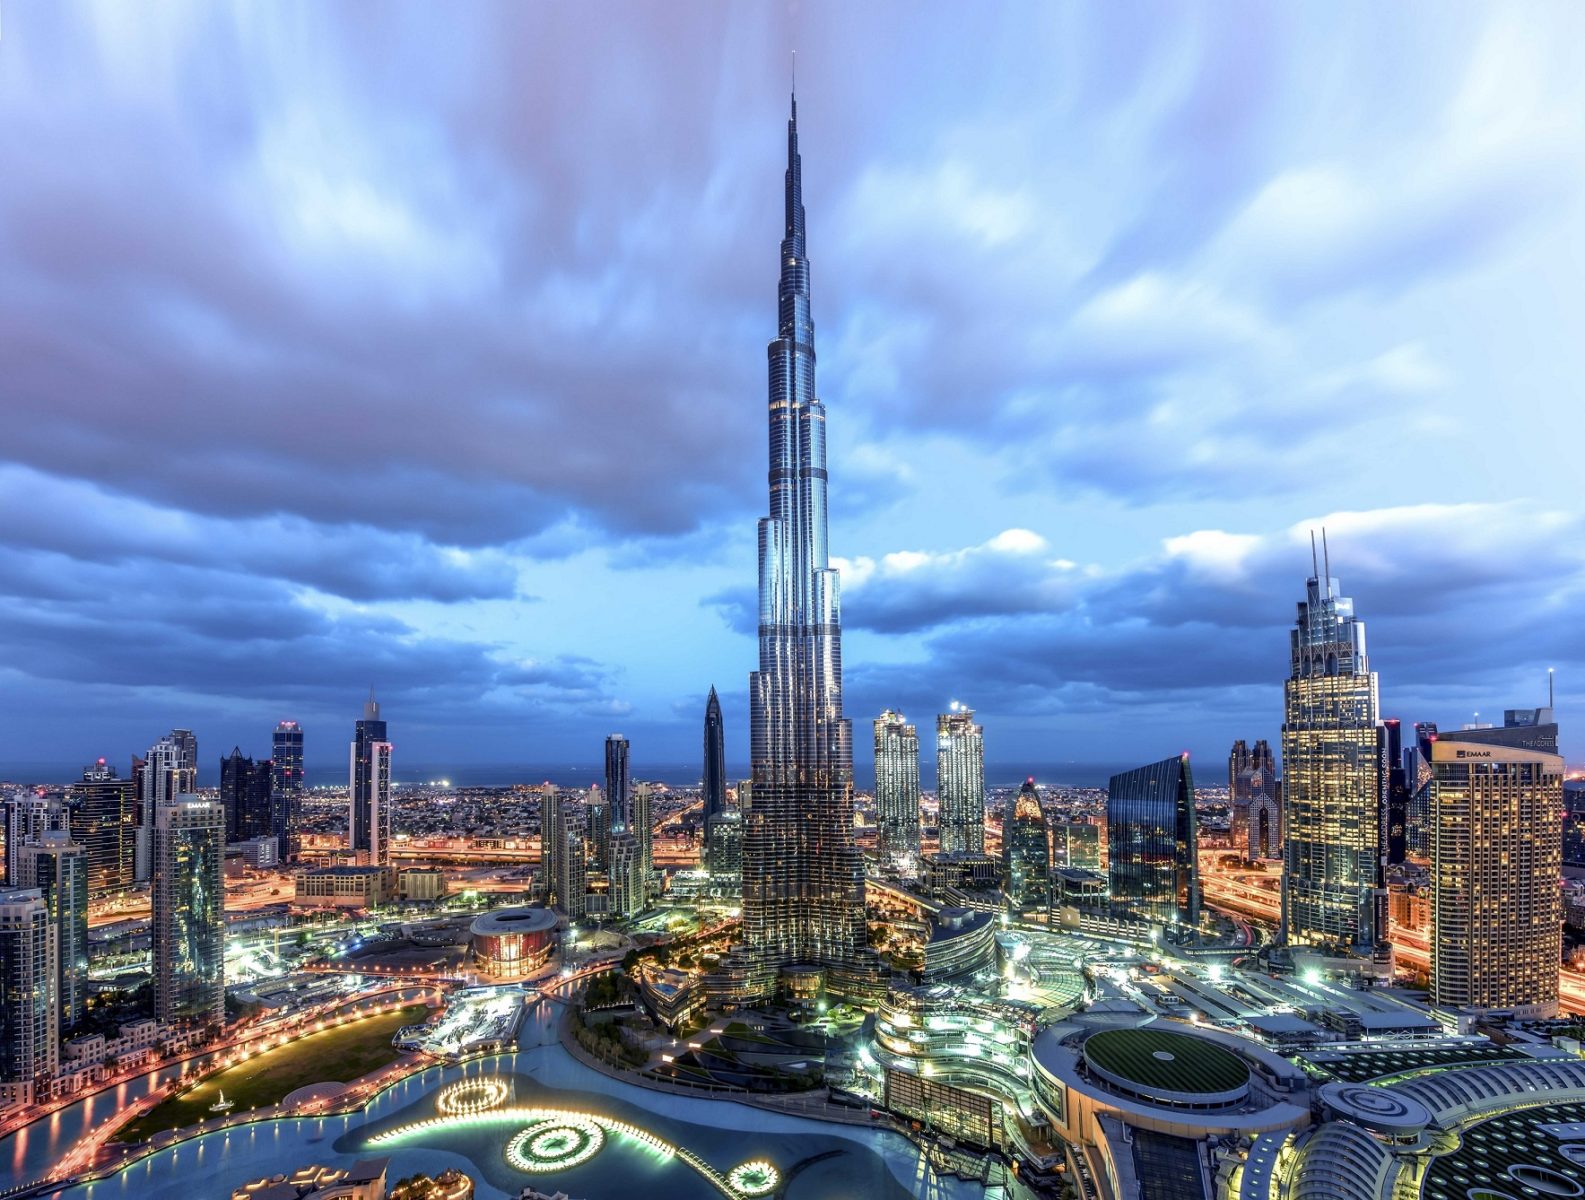 Il famoso Burj Khalifa, l'edificio più alto del mondo